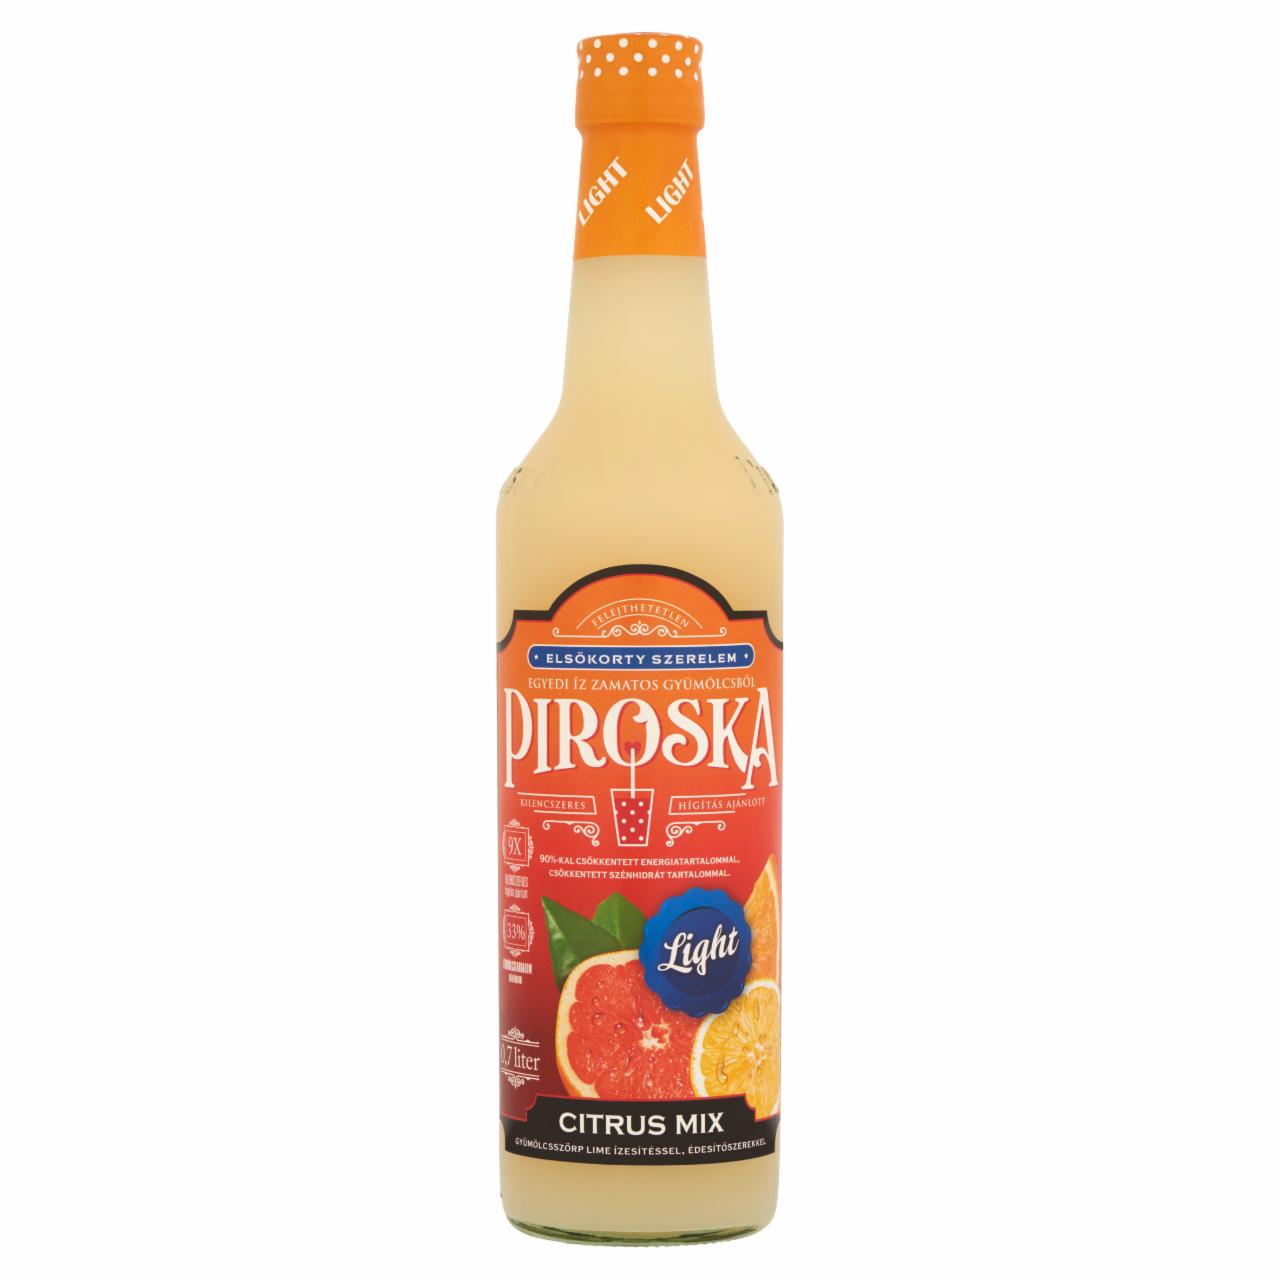 Képek - Piroska Light citrus mix gyümölcsszörp lime ízesítéssel édesítőszerekkel 0,7 l